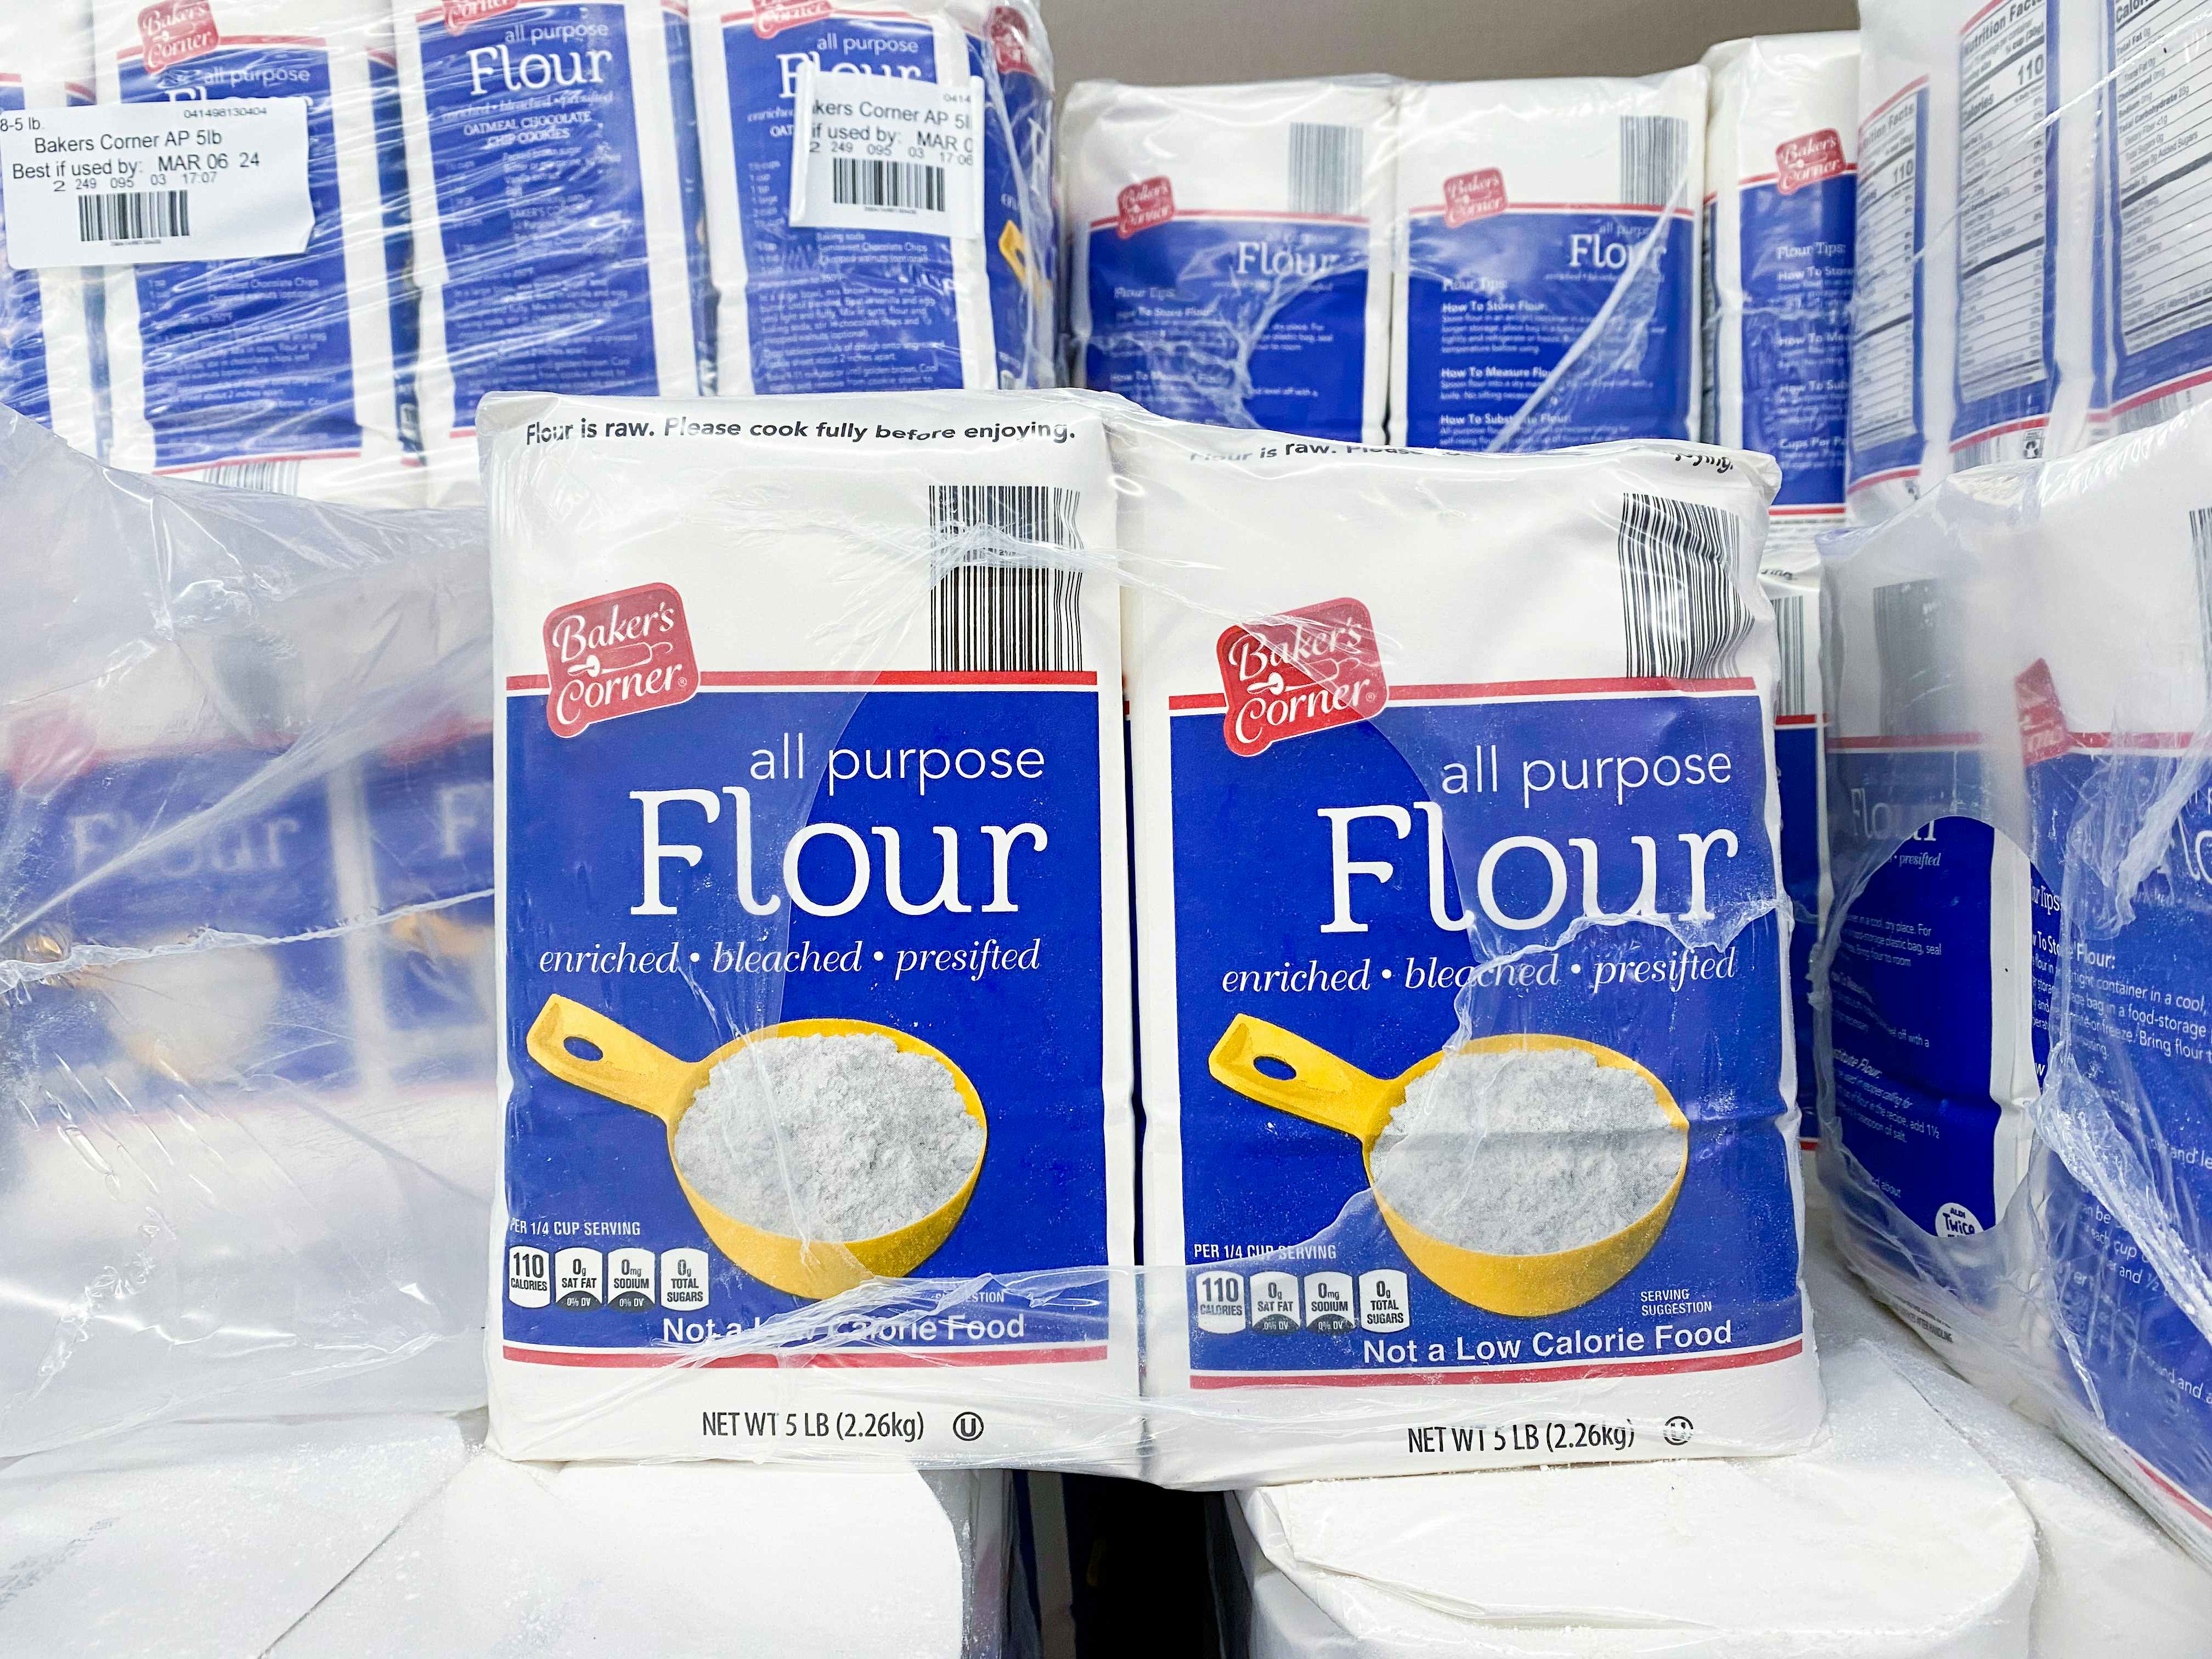 Flour at Aldi